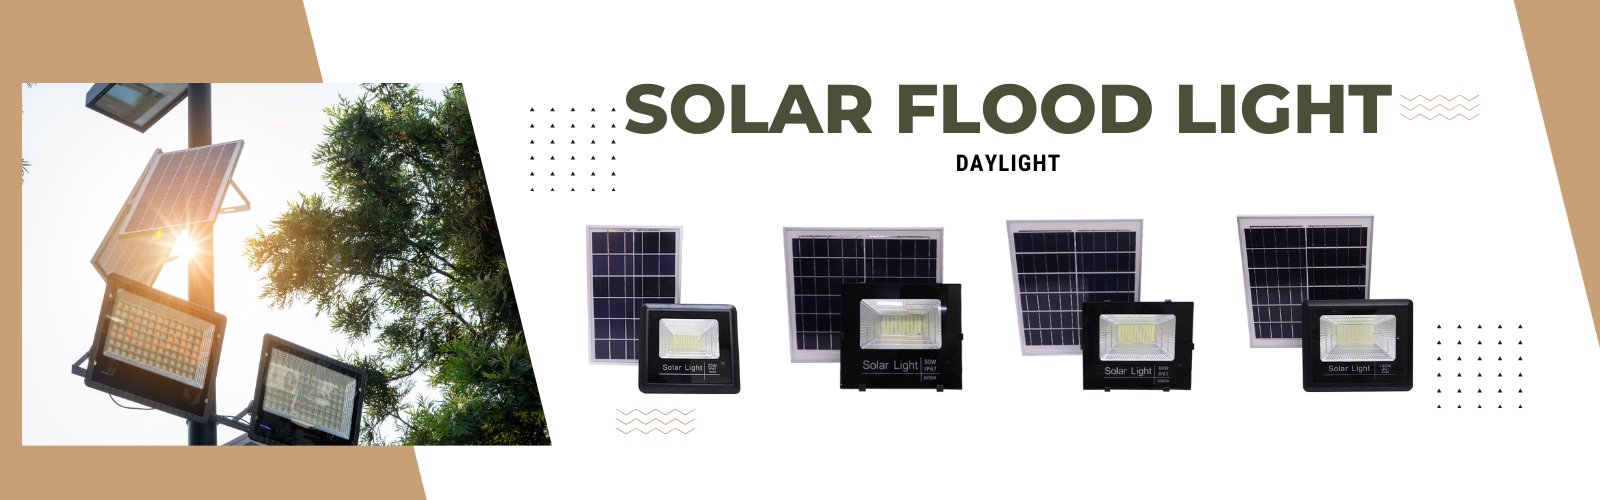 Solar Floodlights Ecoshift Shopify